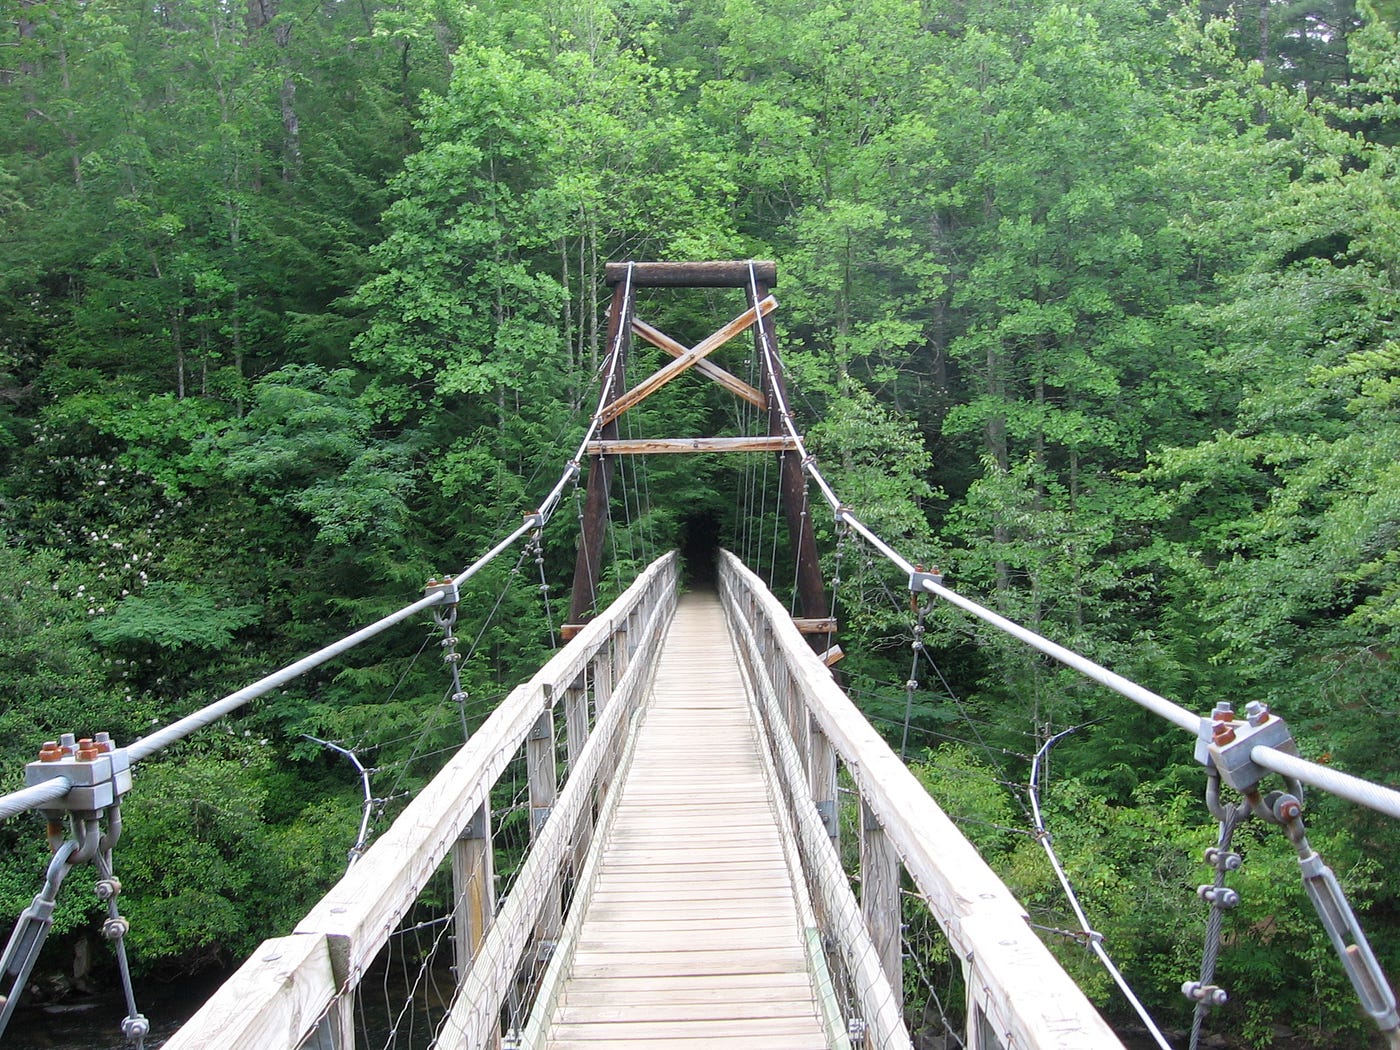 Suspension bridge in nature